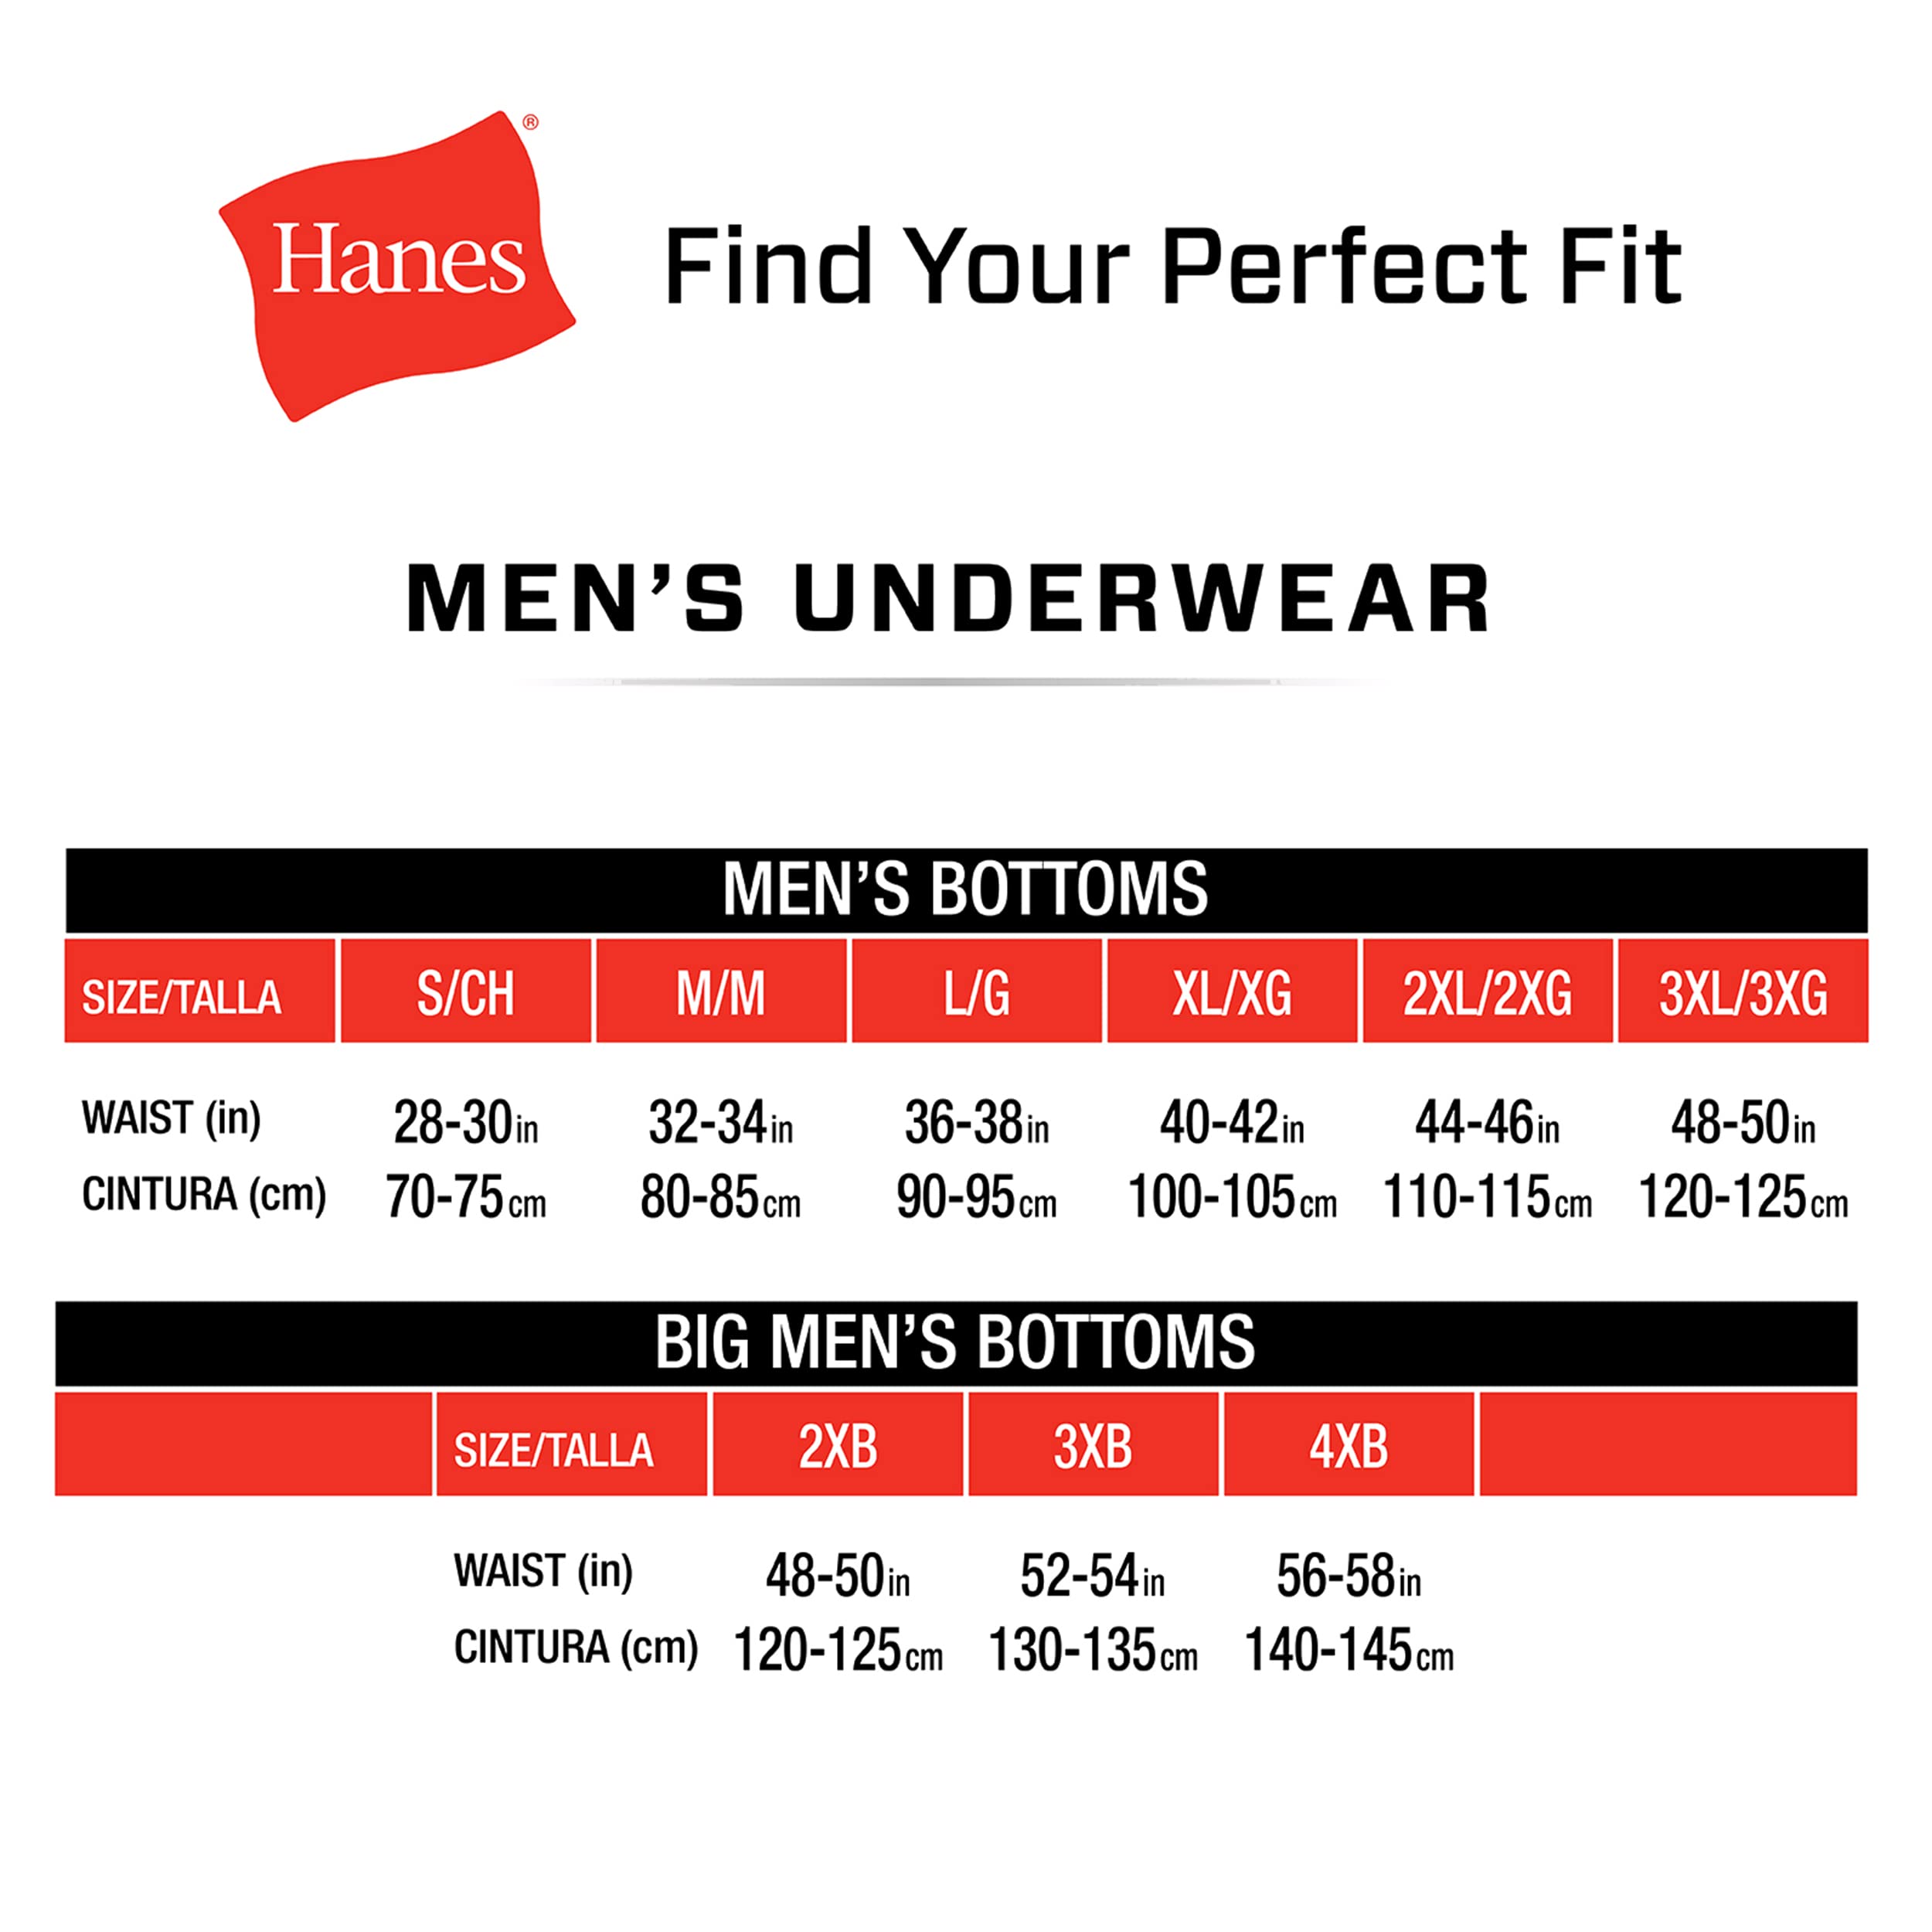 Hanes Men's Tagless Comfort Flex Fit Dyed Bikini, 6 Pack